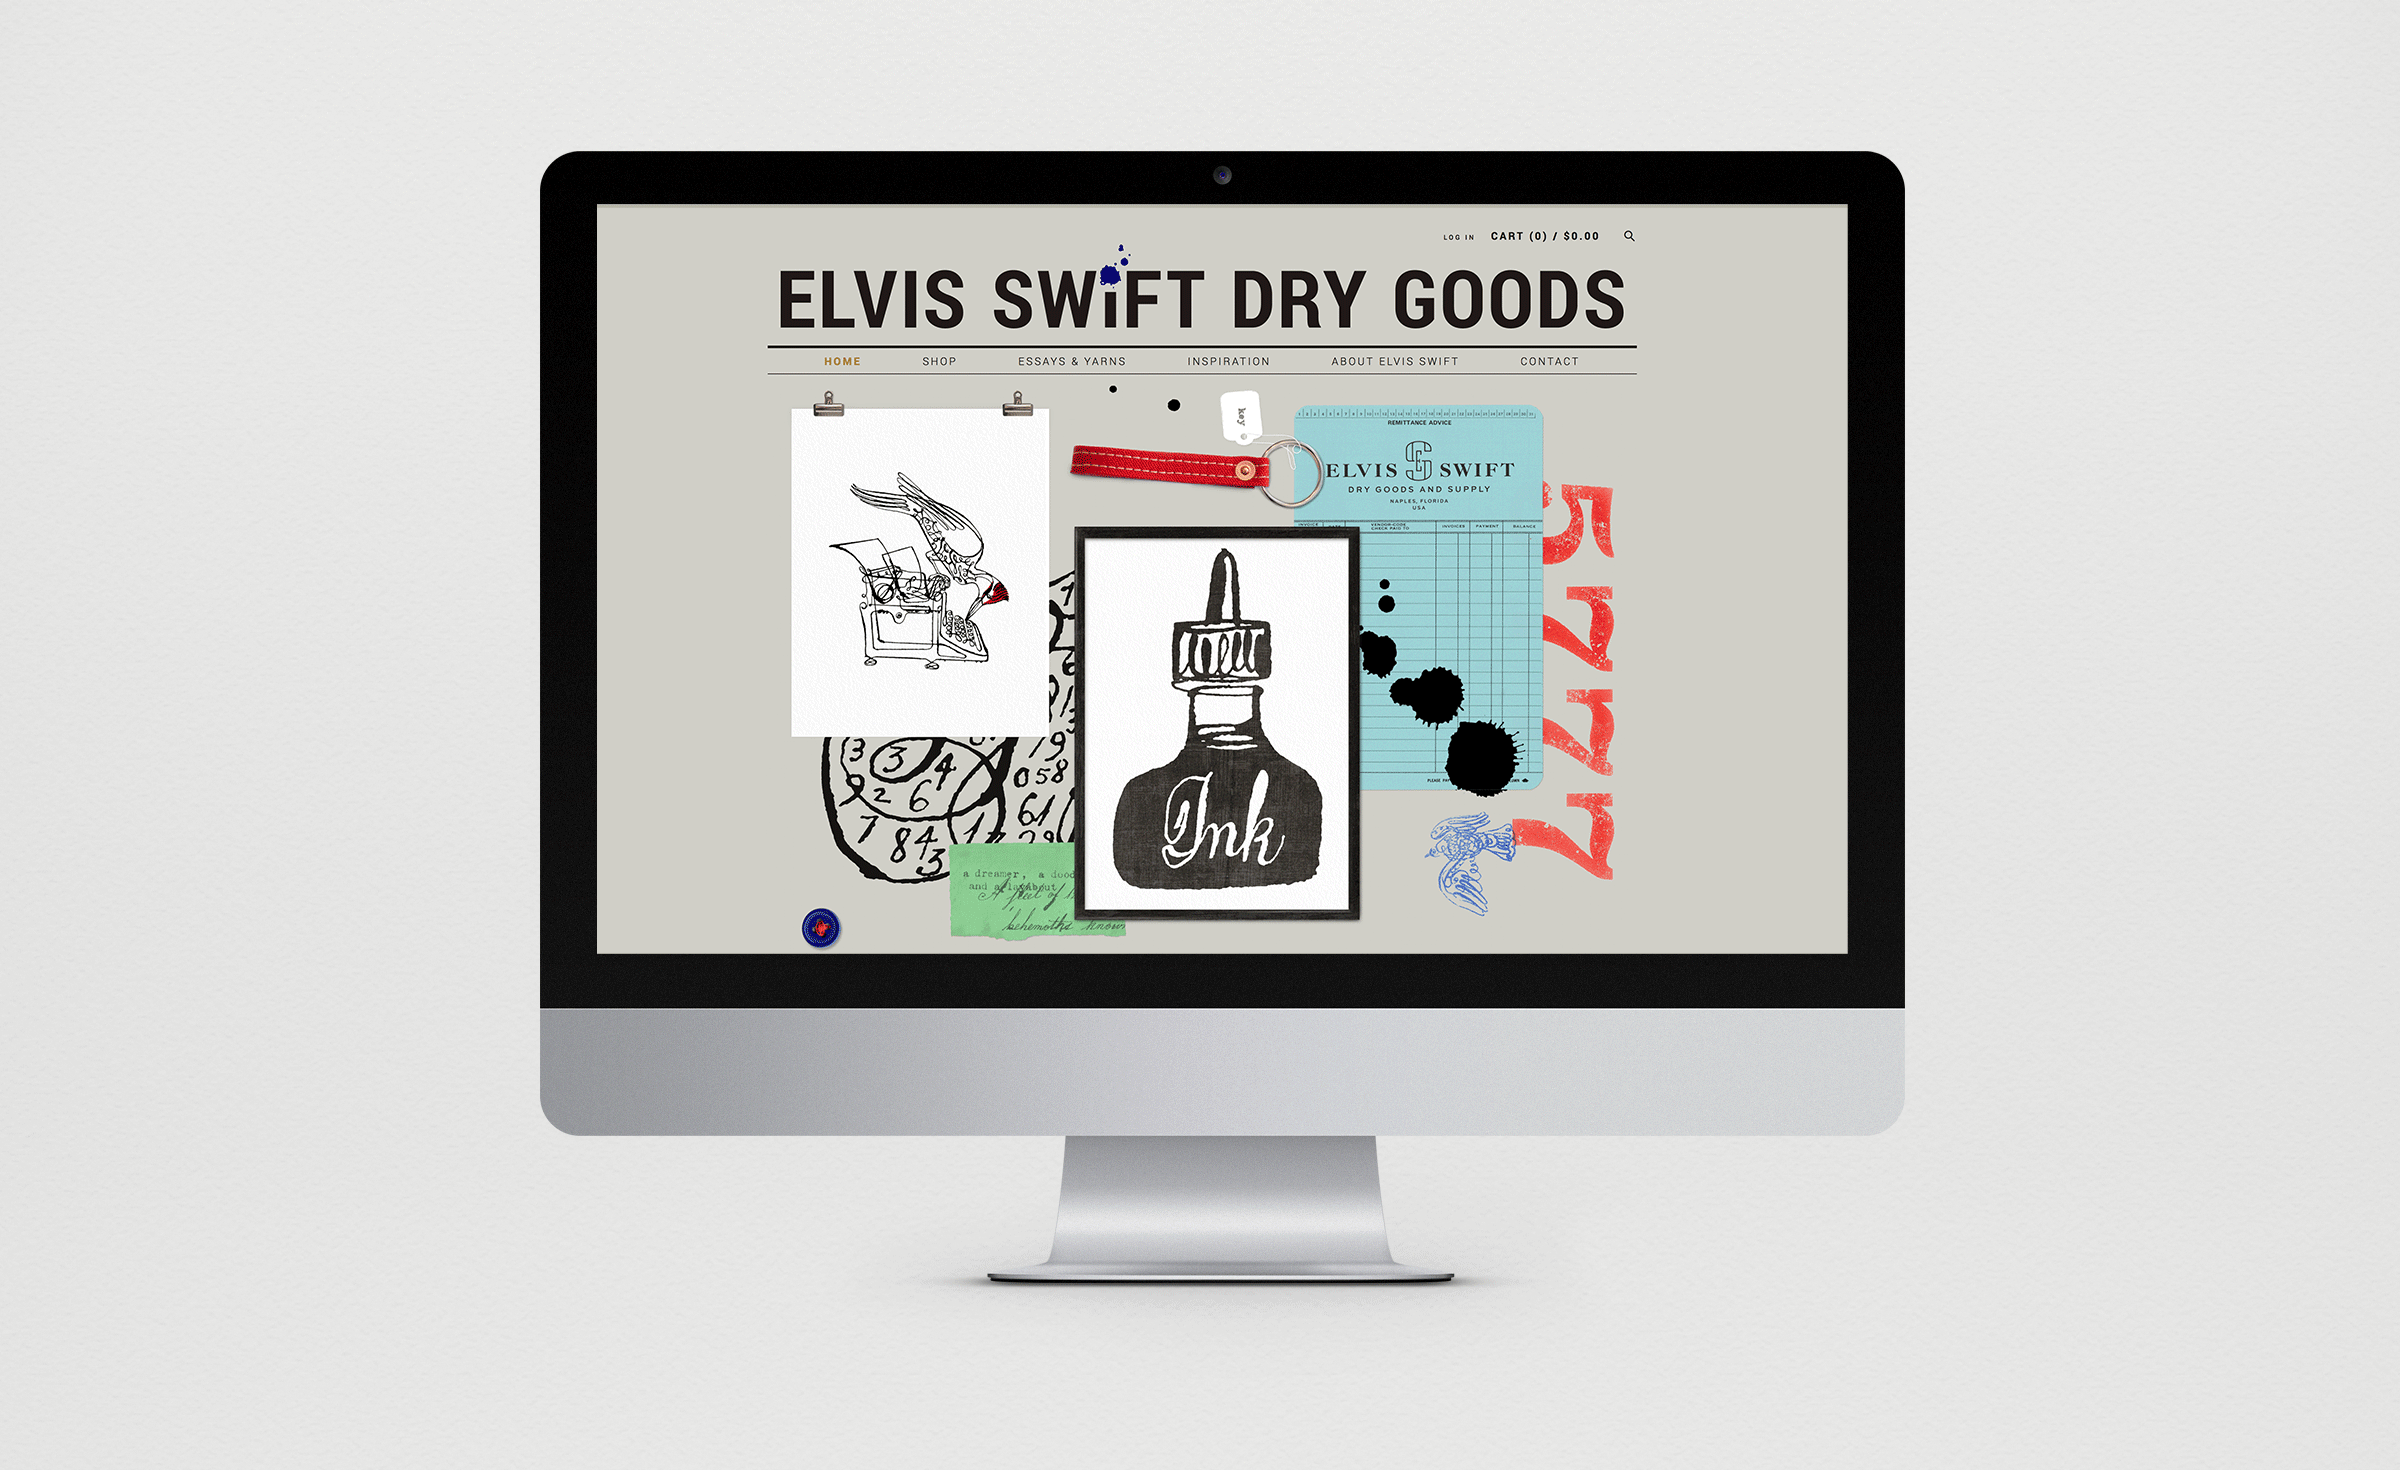 Elvis Swift website design by Werner Design Werks